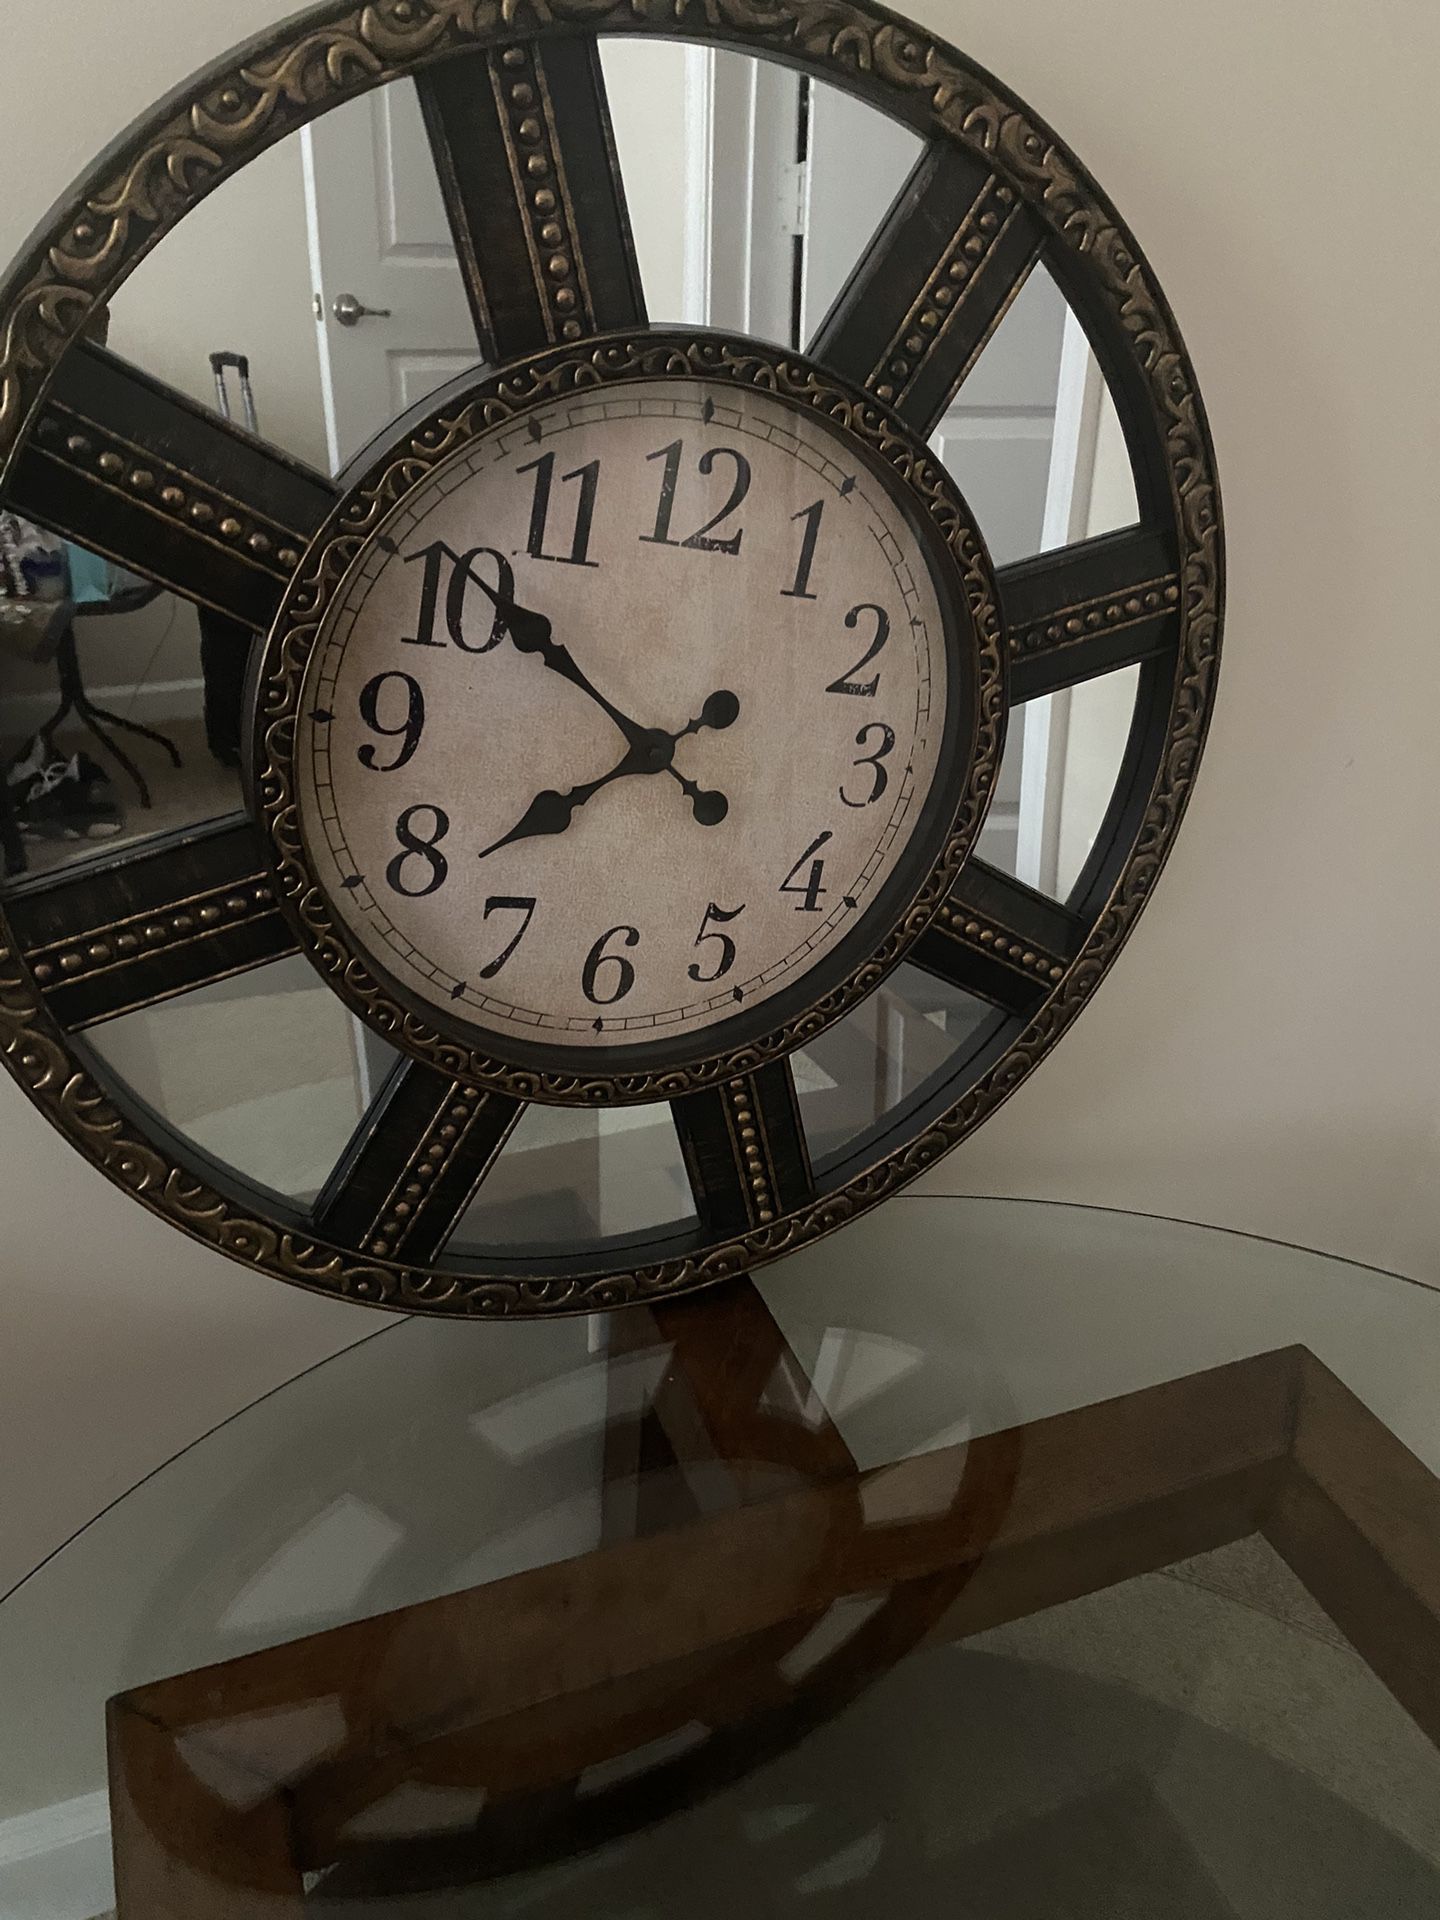 Clock Real Wood